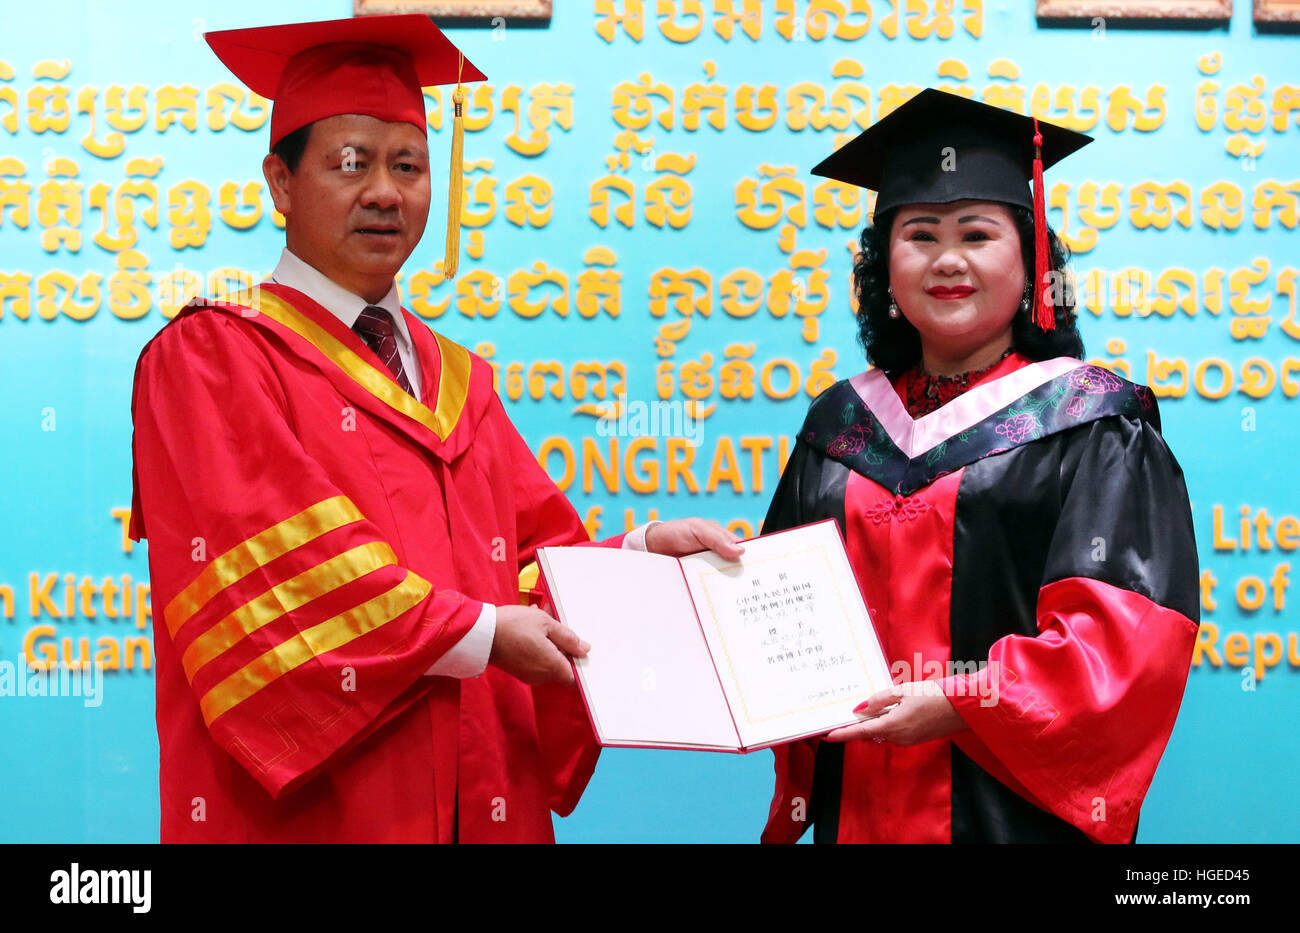 Phnom Penh, Cambodge. Jan 9, 2017. Le Premier ministre cambodgien Samdech Techo Hun Sen femme Bun Rany (R) reçoit un doctorat honorifique en littérature du xie Shangguo, président de l'Université des nationalités du Guangxi à Phnom Penh, Cambodge, le 9 janvier 2017. Bun Rany a obtenu le degré de sa contribution à la promotion des échanges bilatéraux. © Sovannara/Xinhua/Alamy Live News Banque D'Images